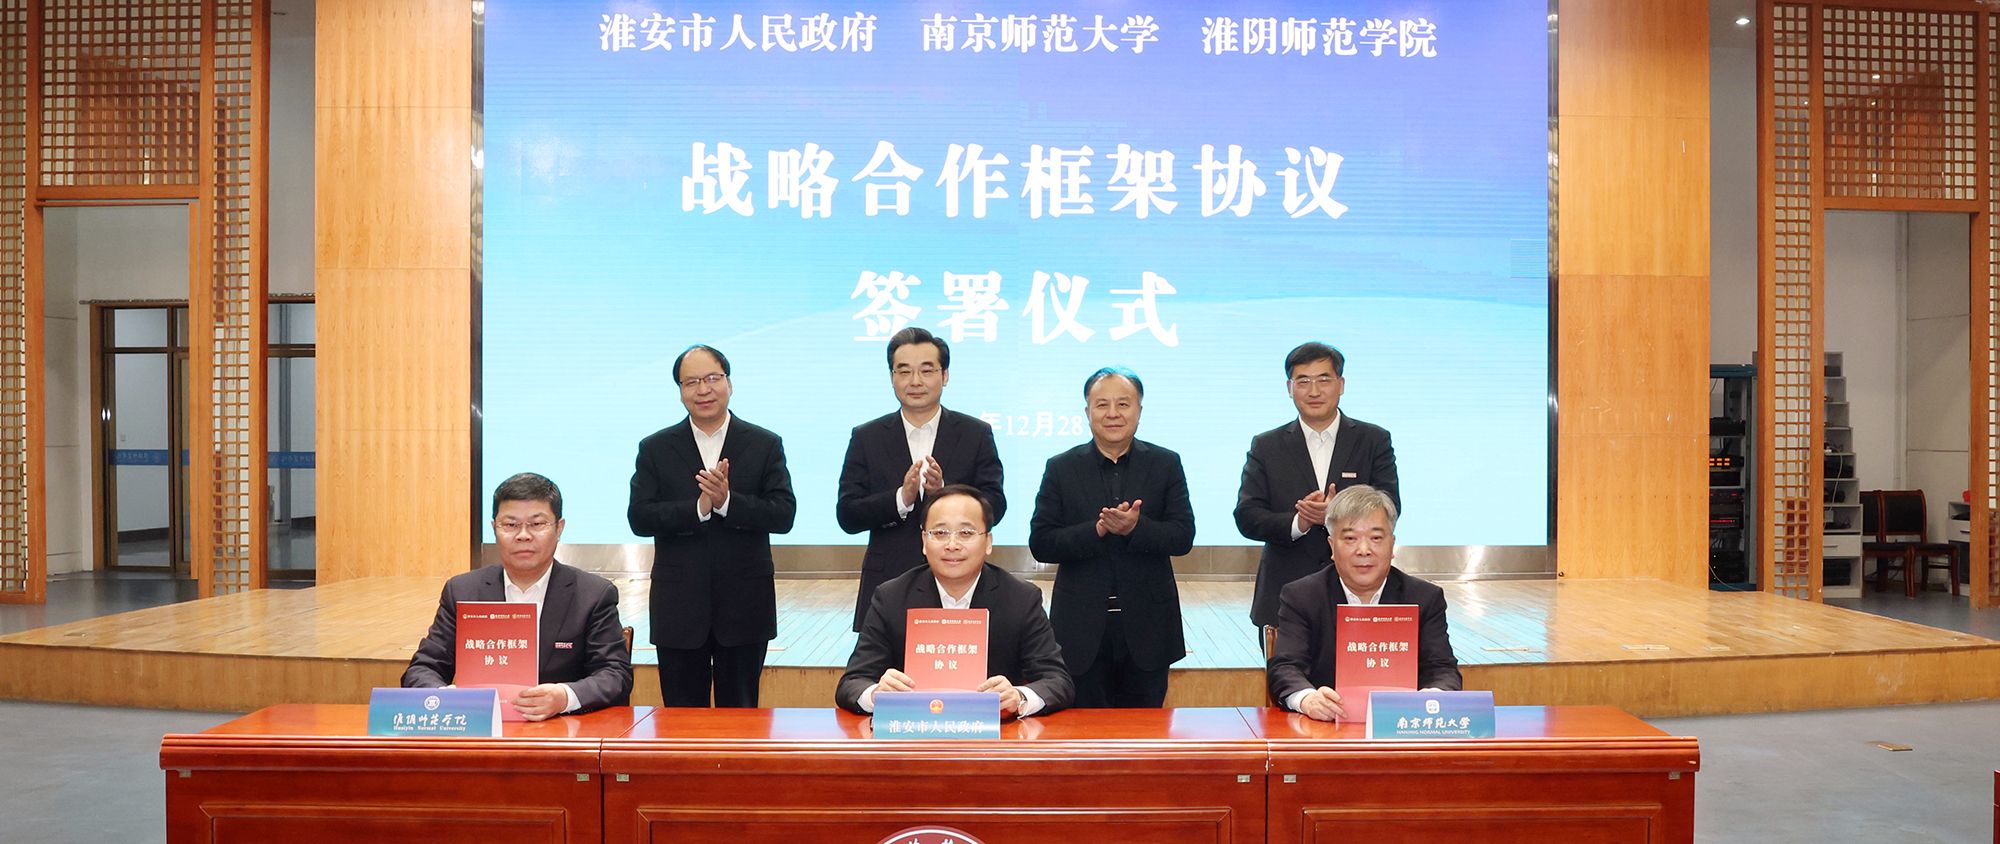 66体育直播网(中国)有限公司与淮安市人民政府、南京师范大学签署战略合作框架协议